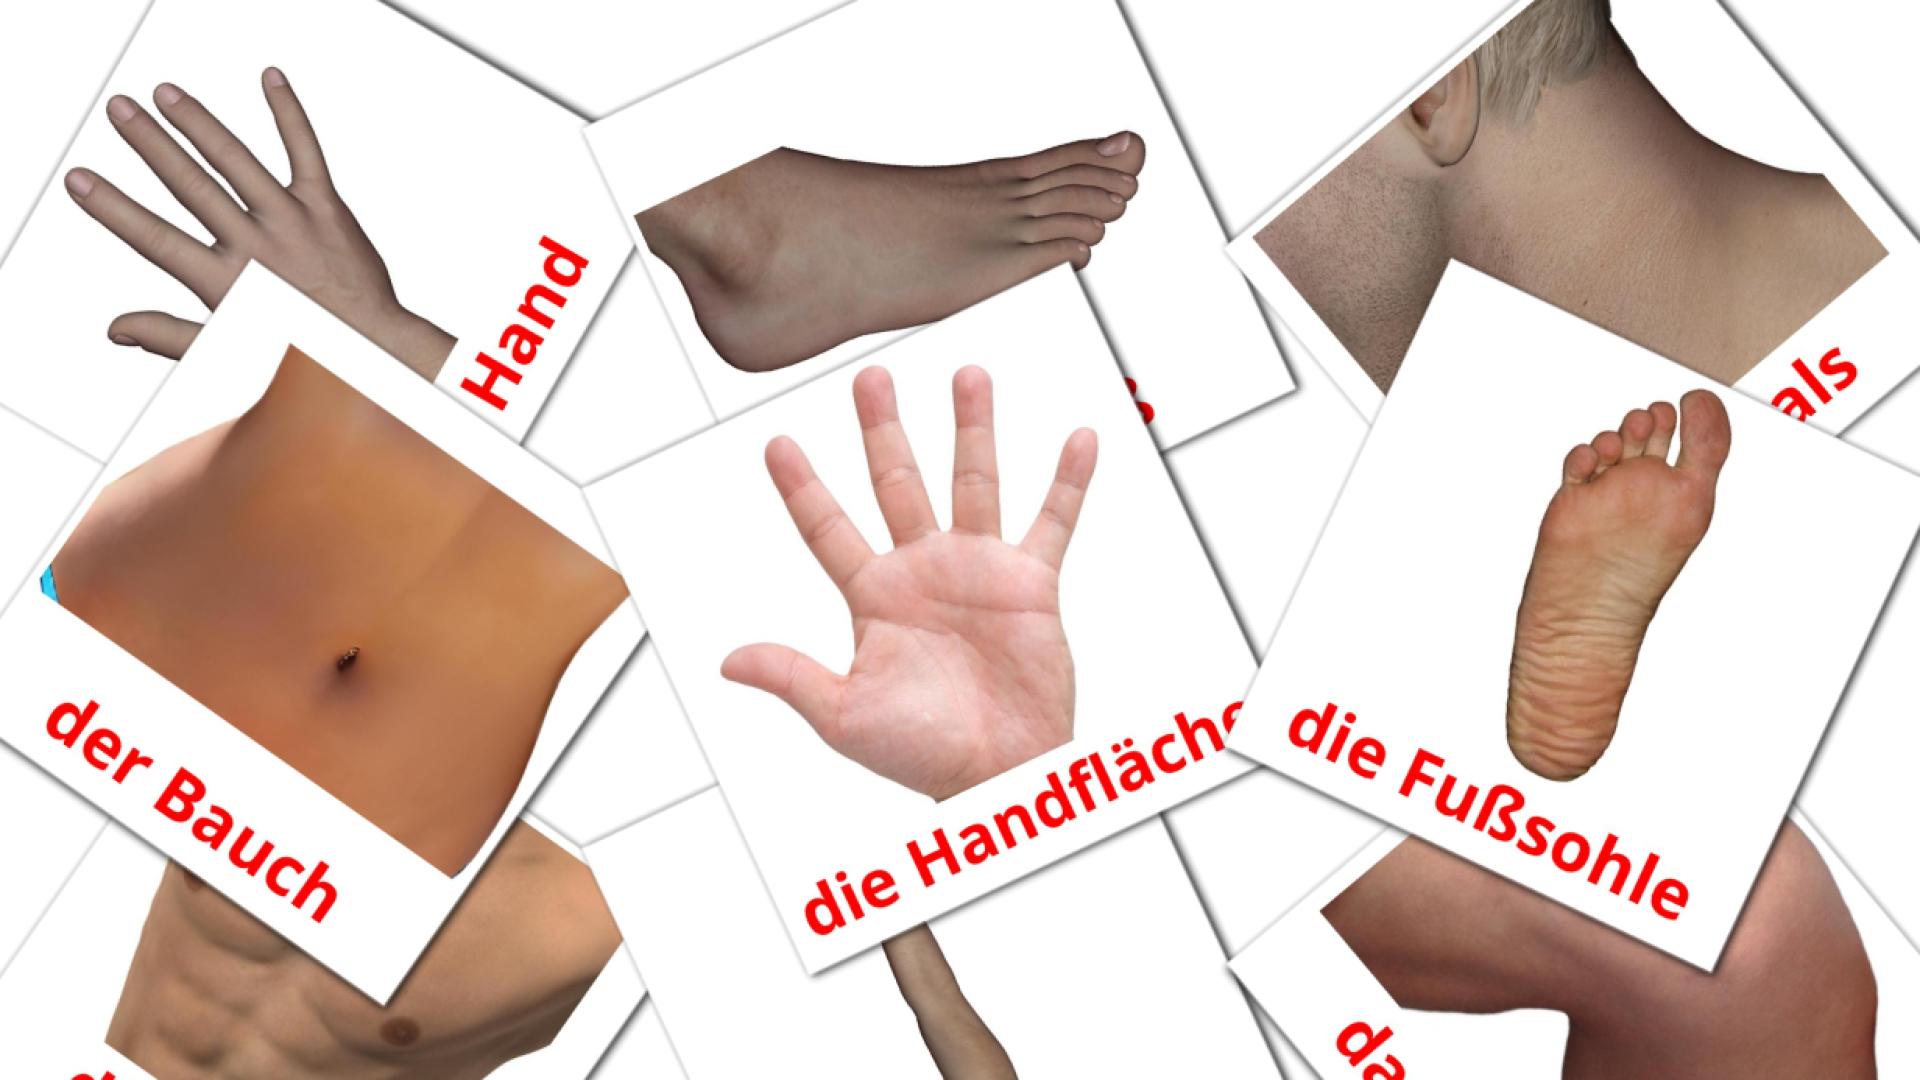 Partes do Corpo - Cartões de vocabulário alemão